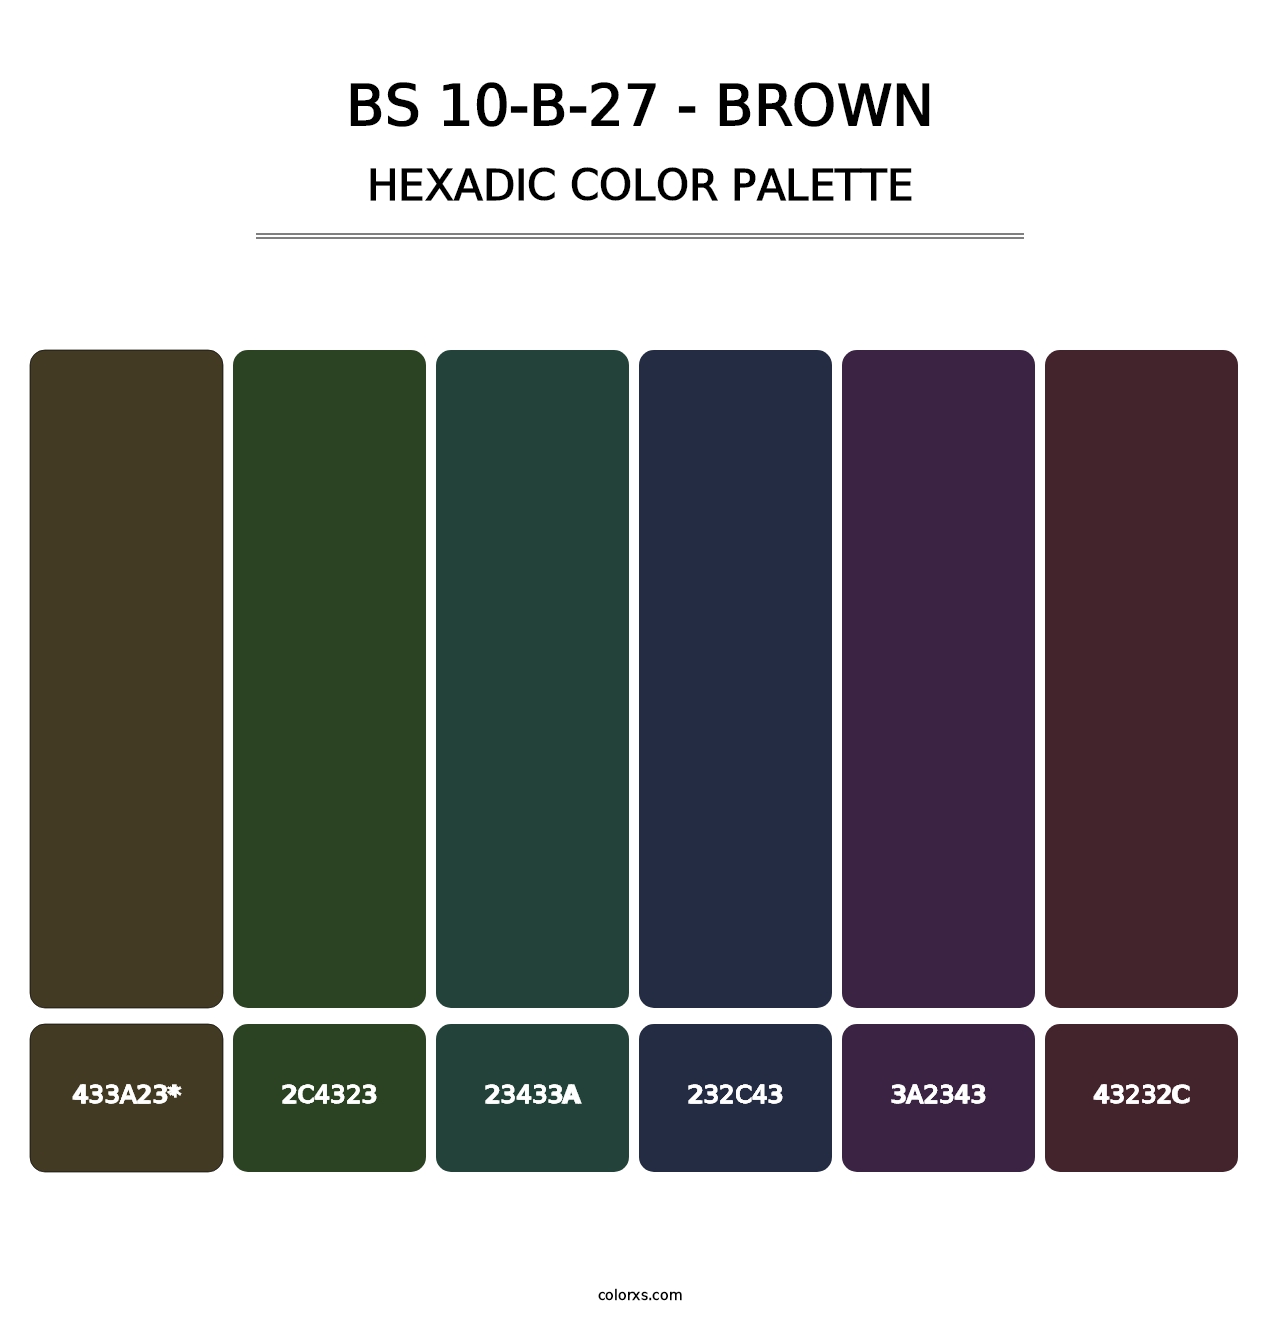 BS 10-B-27 - Brown - Hexadic Color Palette